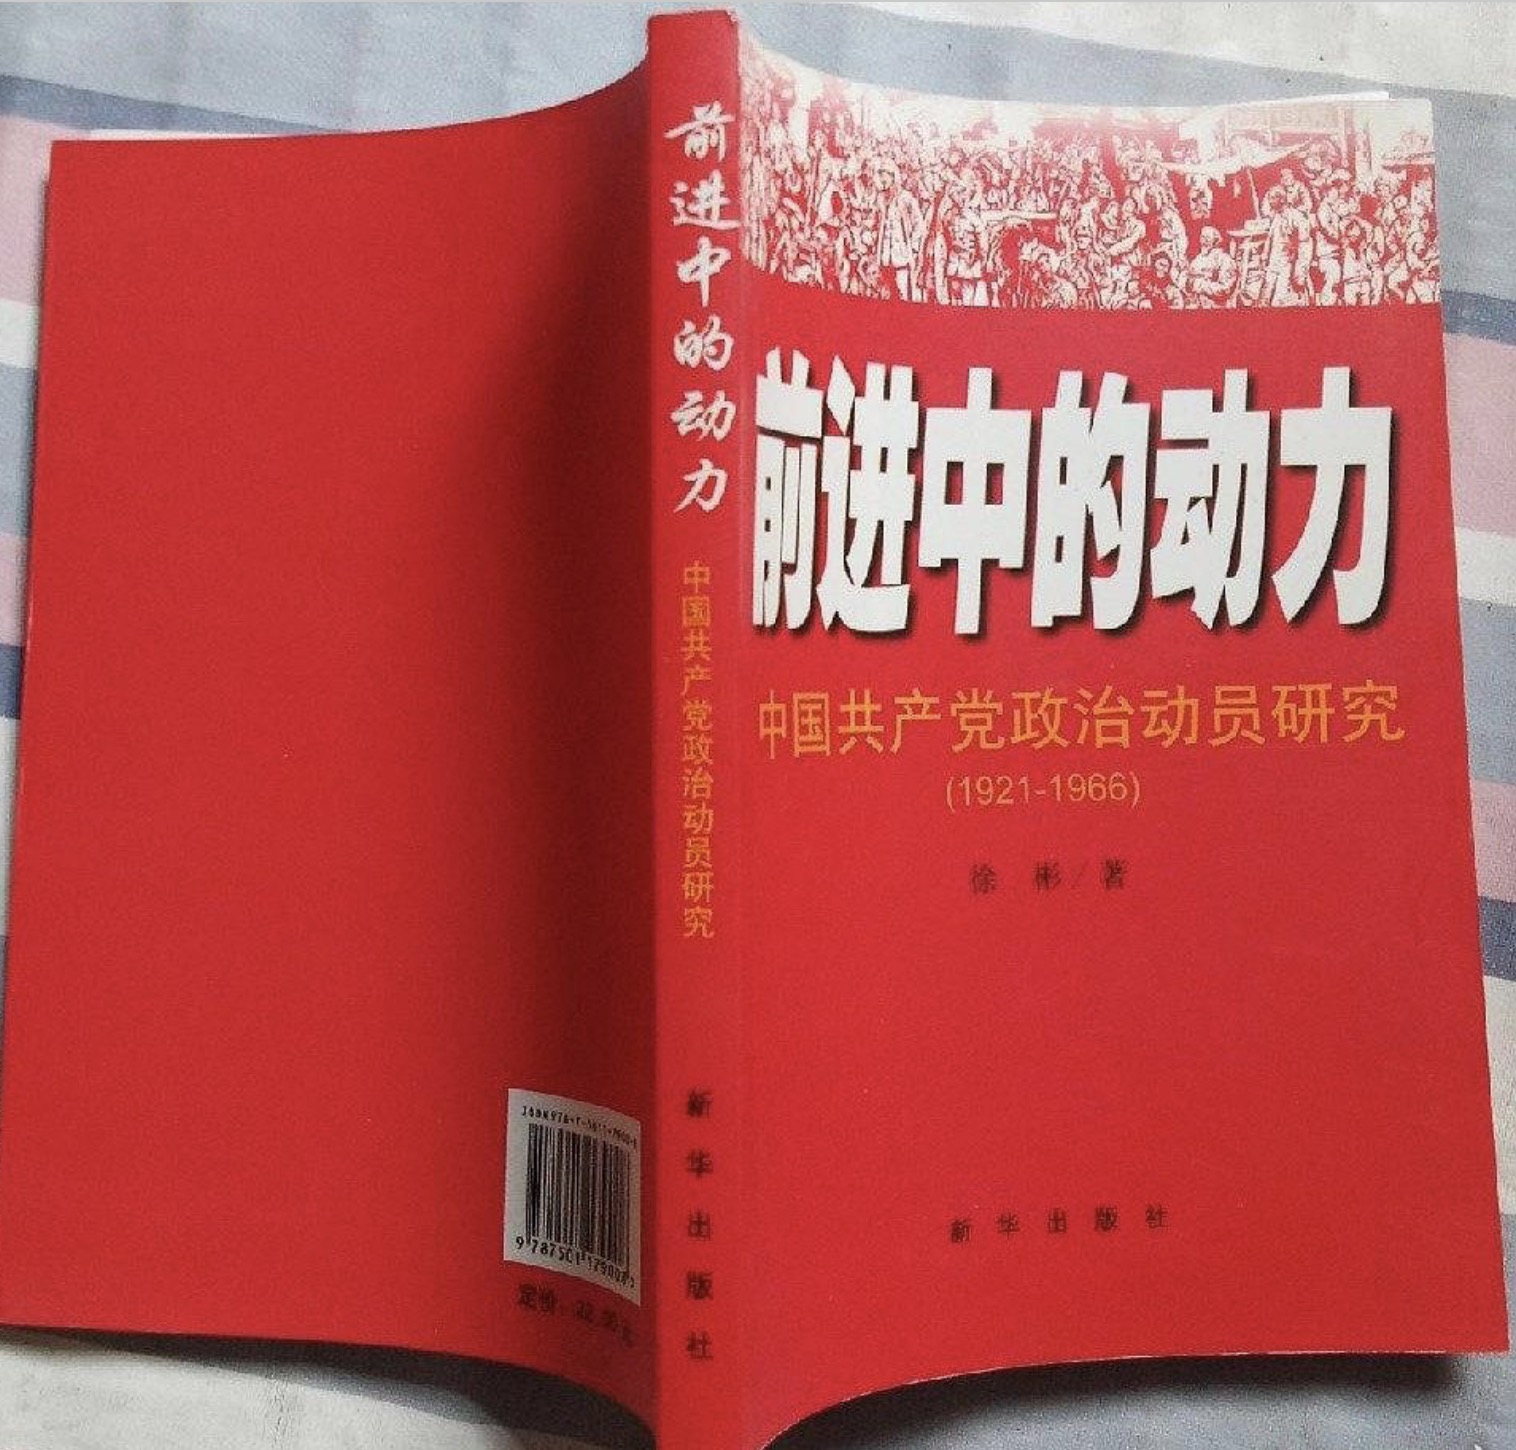 前進中的動力-中國共產黨政治動員研究(1921-1966)